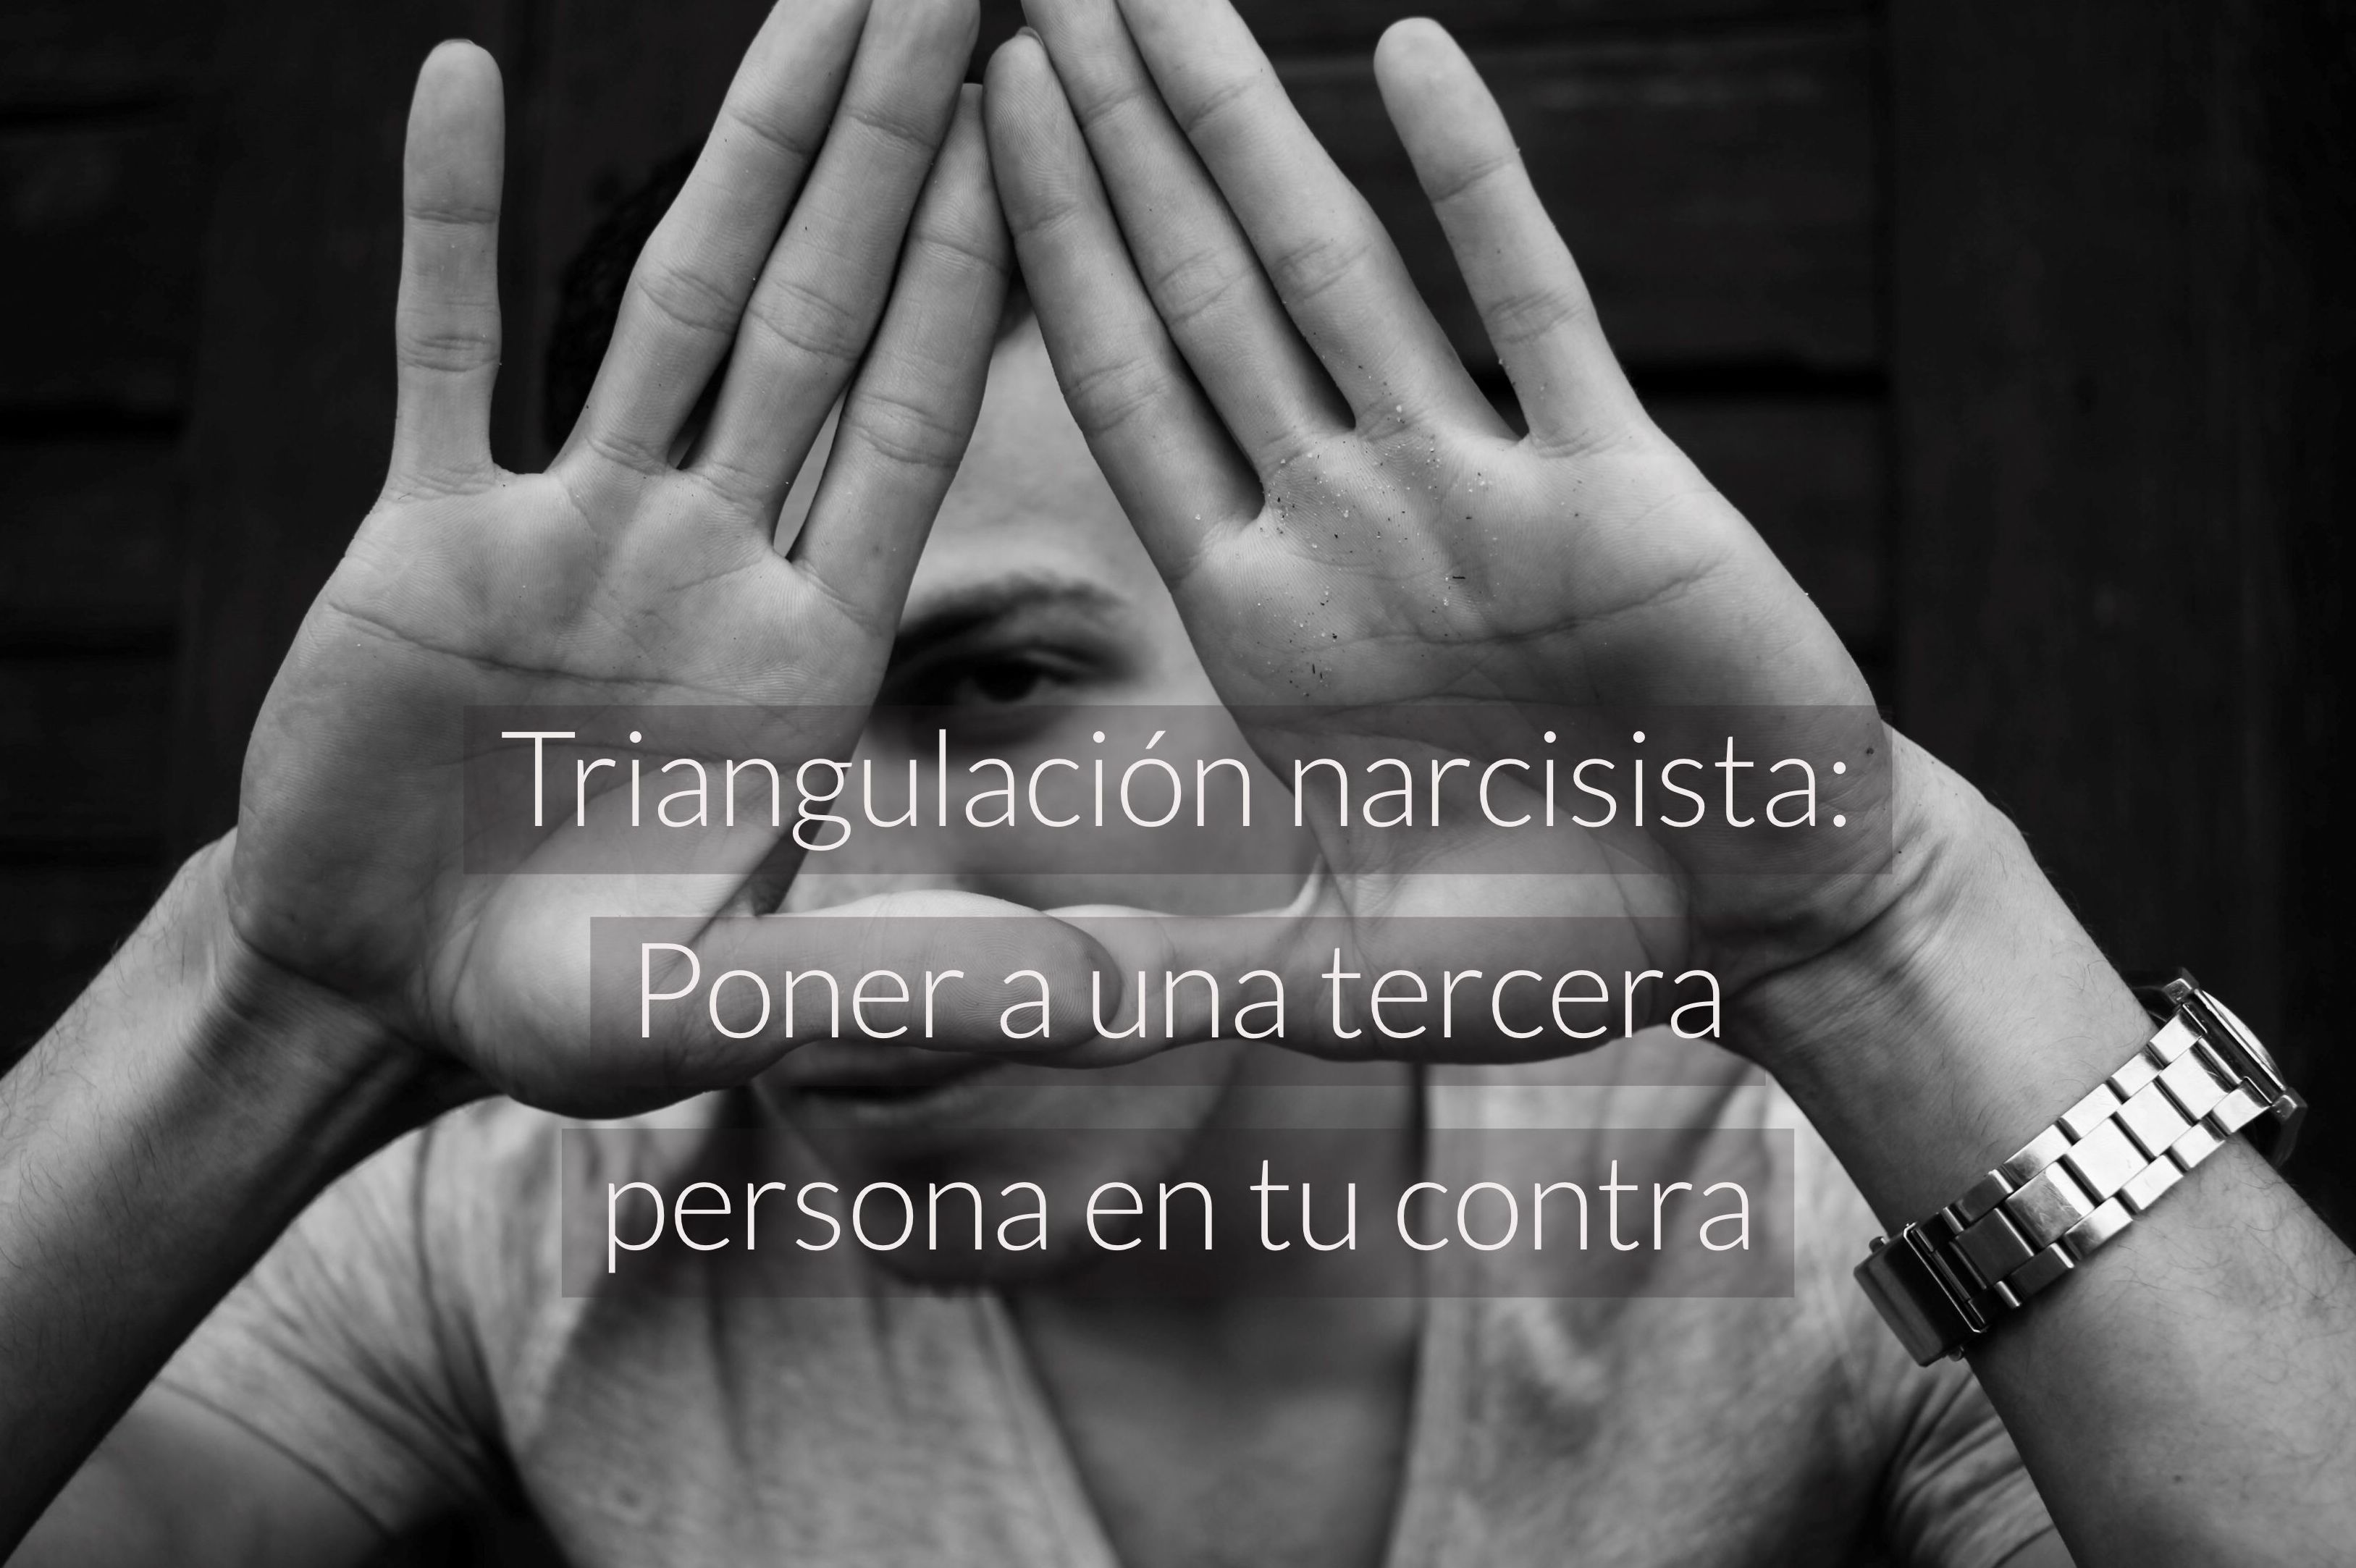 Triangulación narcisista: Poner a una tercera persona en tu contra 